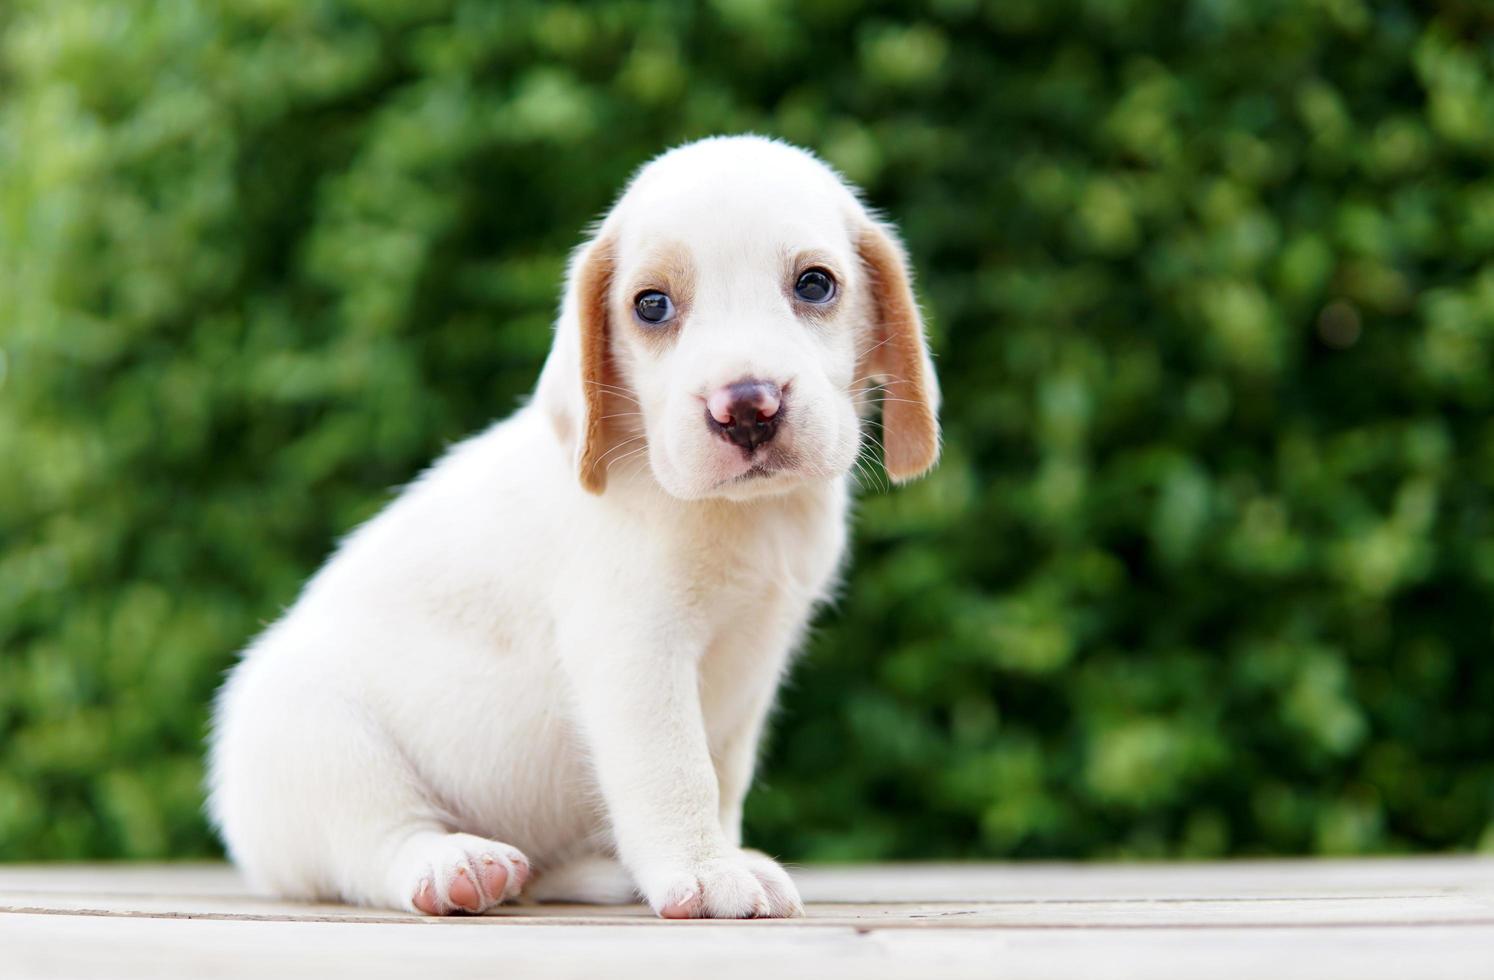 mignon chiot beagle âgé d'un mois assis sur un sol vert et impatient. l'image a un espace de copie pour la publicité ou le texte. les beagles ont un excellent nez. photo